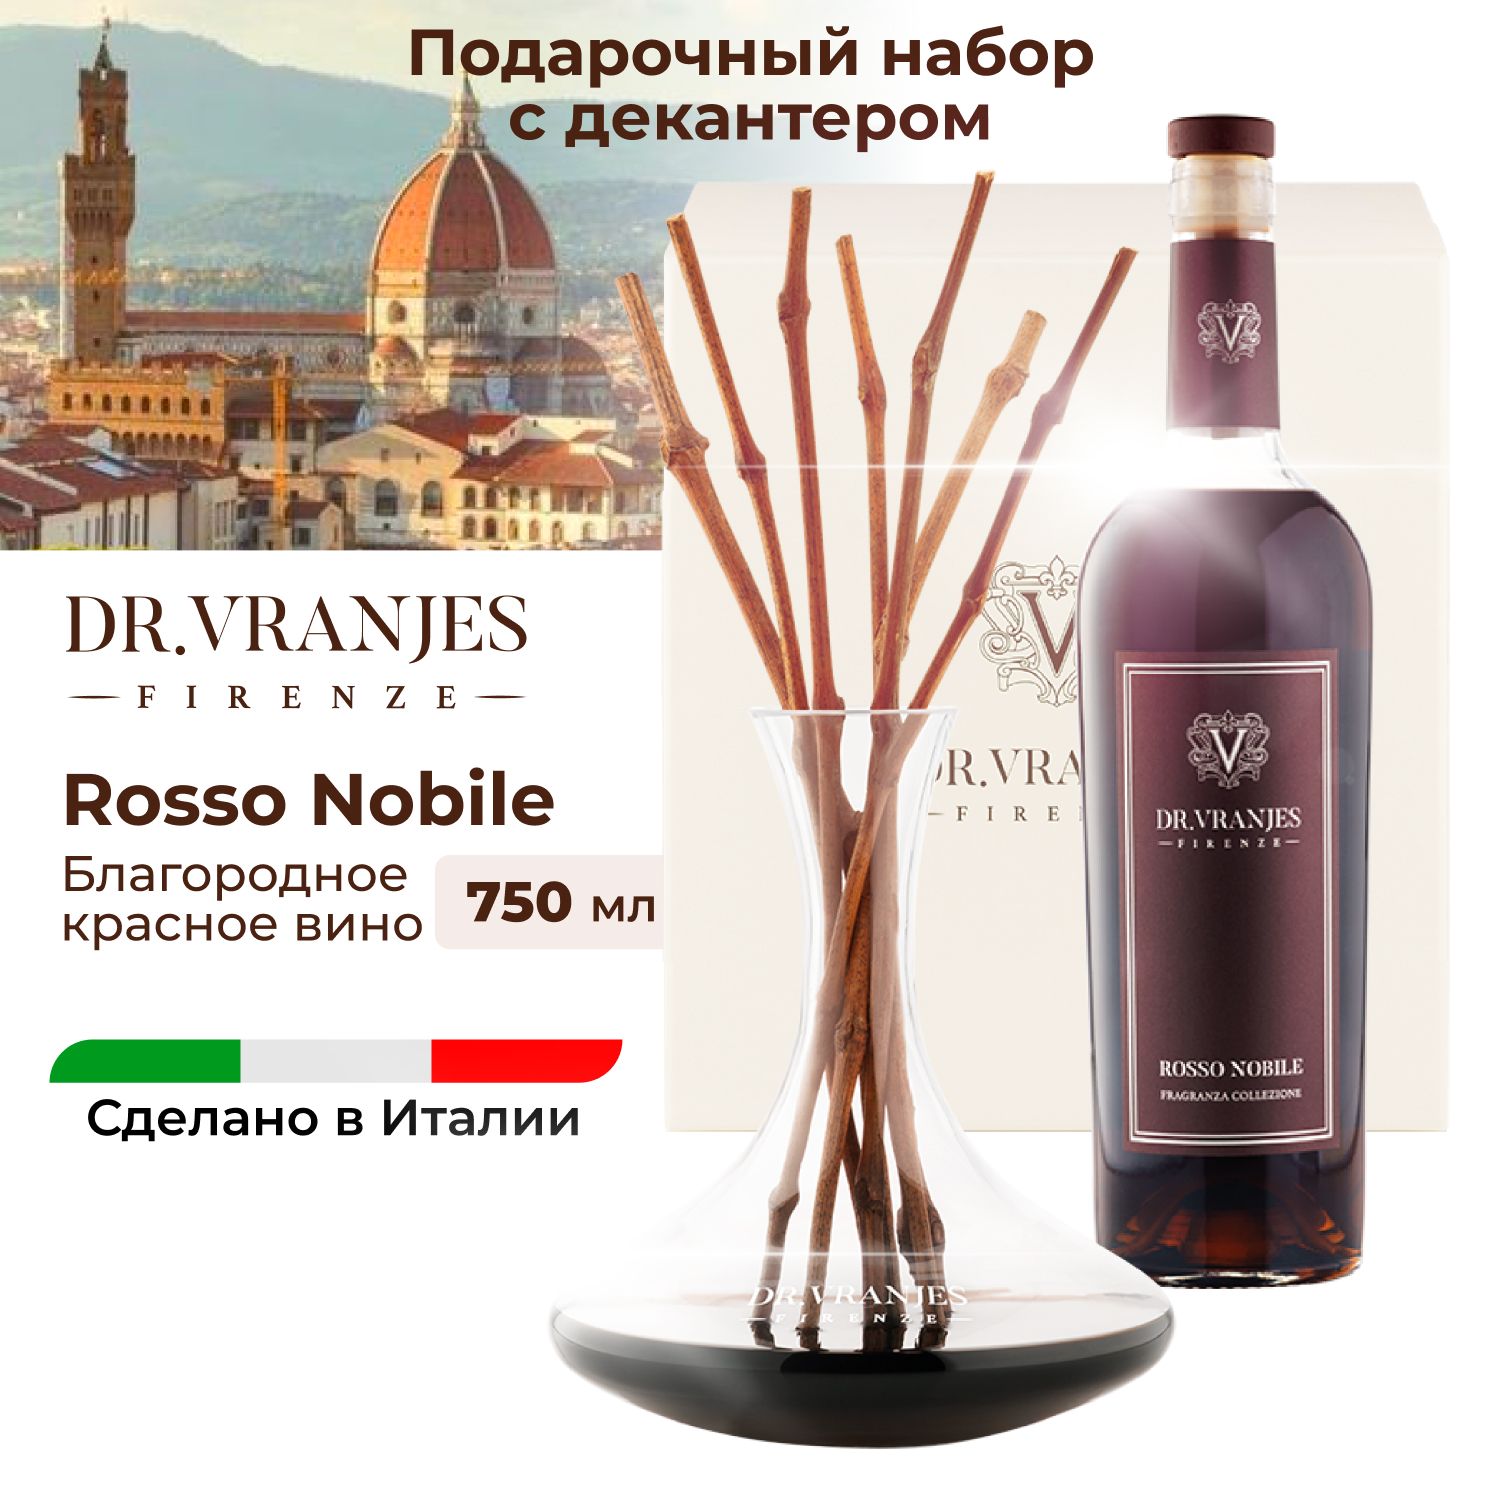 Подарочный набор Dr.Vranjes Rosso Nobile Благородное красное вино с декантером 750мл